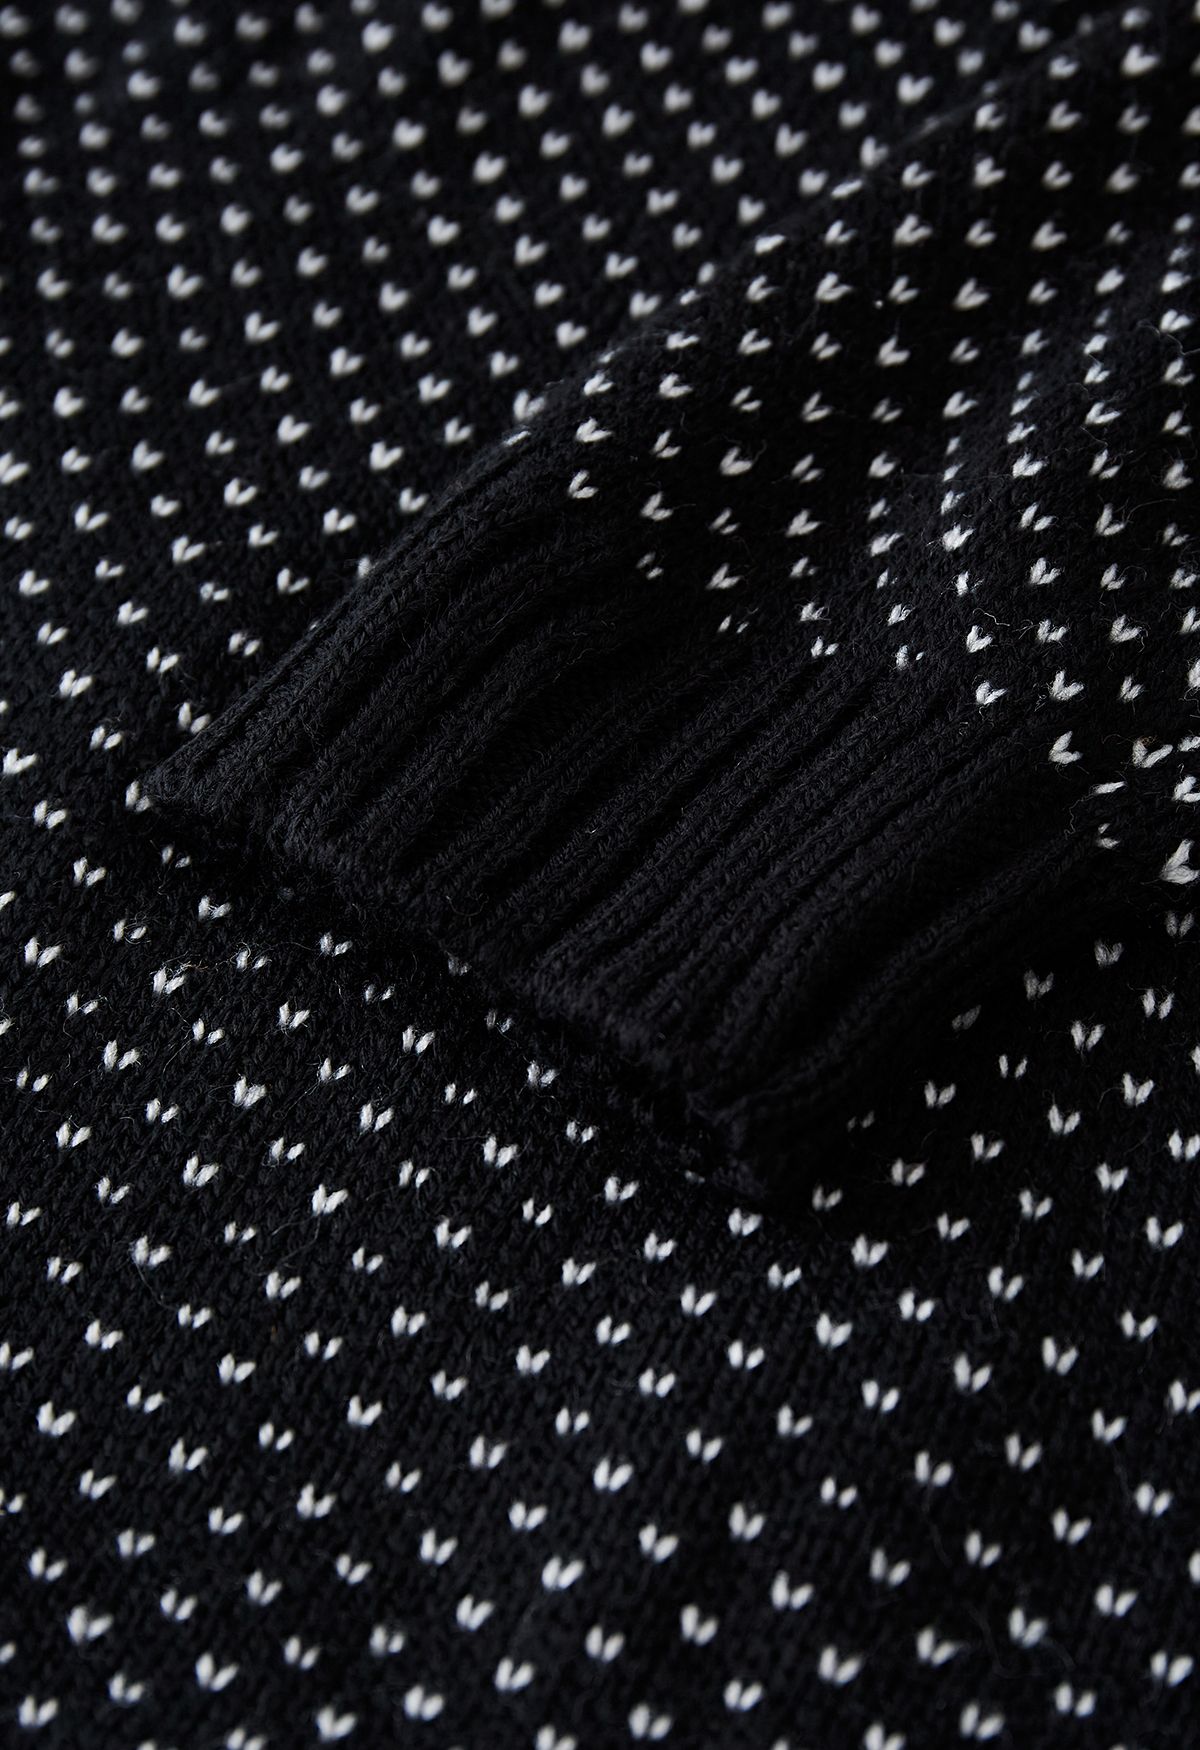 Suéter de punto de manga larga fantasma lindo en negro